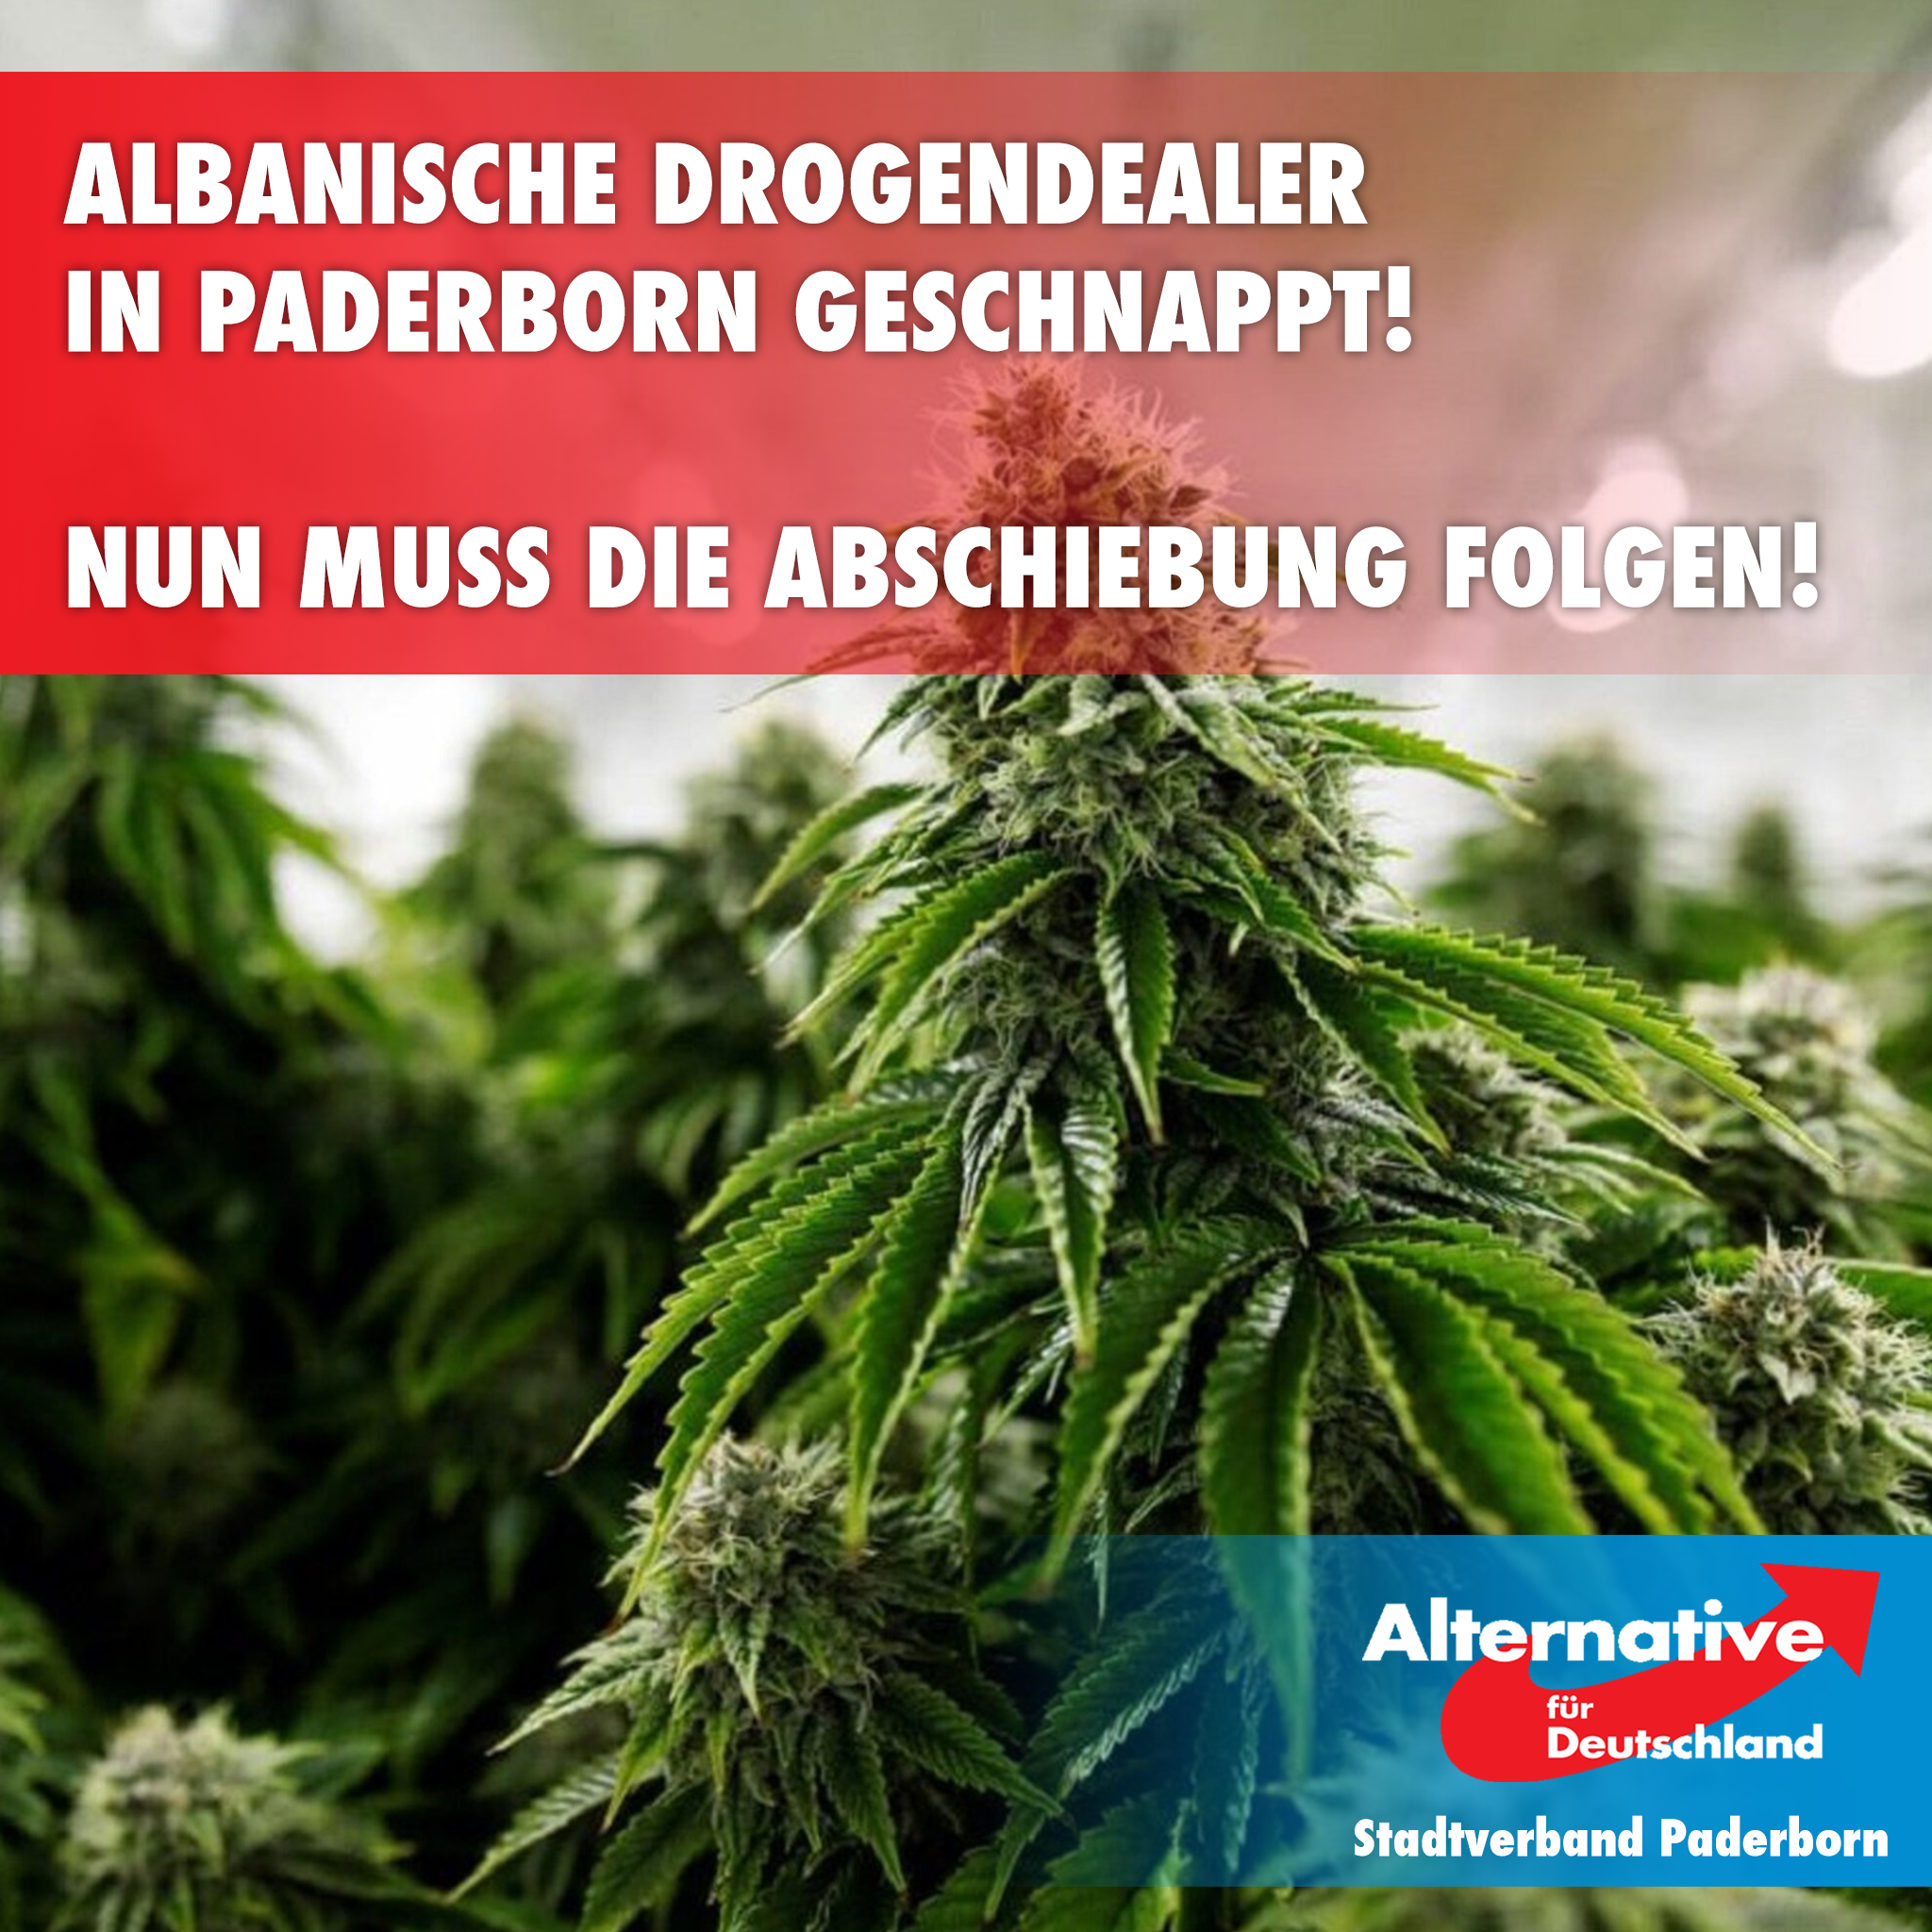 You are currently viewing Albanische Drogendealer in Paderborn geschnappt! Nun muss die Abschiebung folgen!